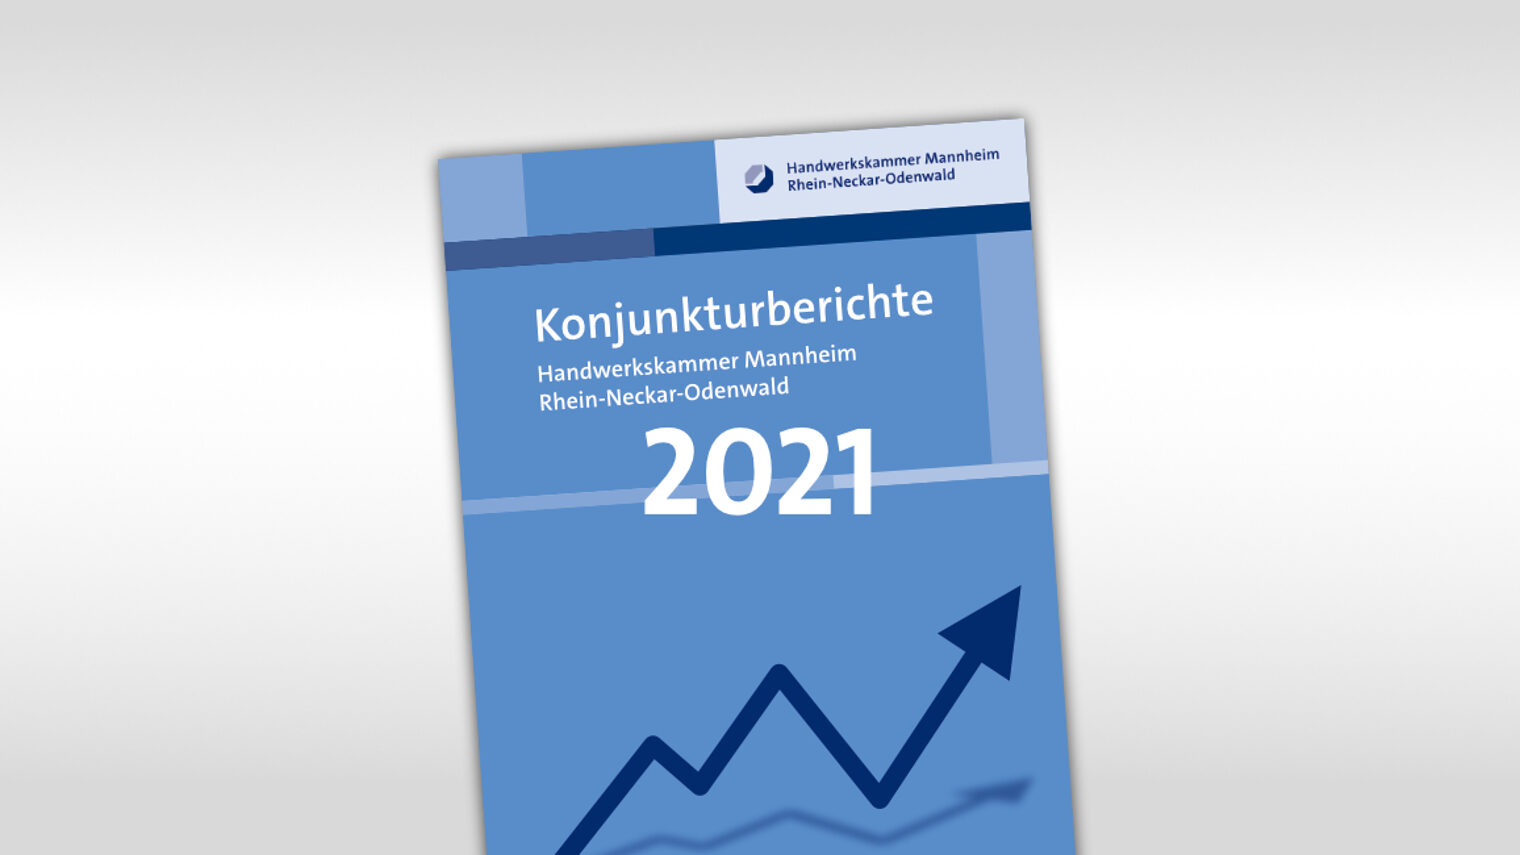 Titelmotiv Konjunkturbericht plus Jahreszahl 2021